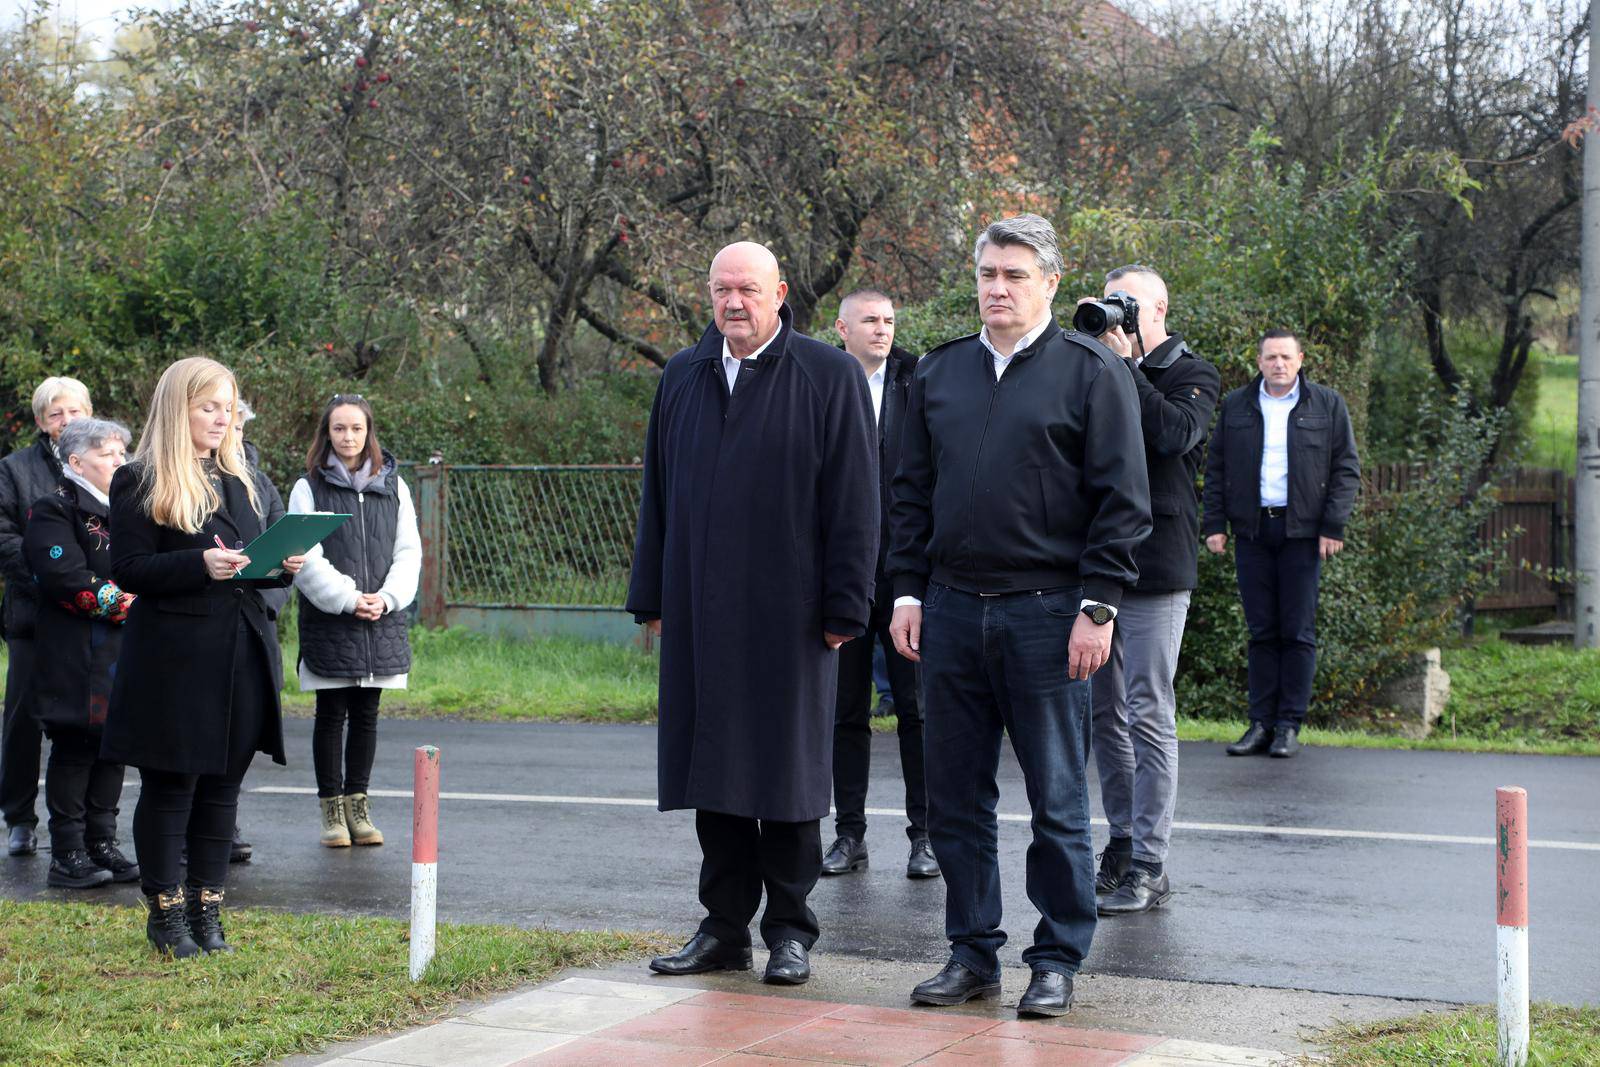 Odavanje počasti žrtvama: Predsjednik Milanović u Sisačko-moslavačkoj županiji